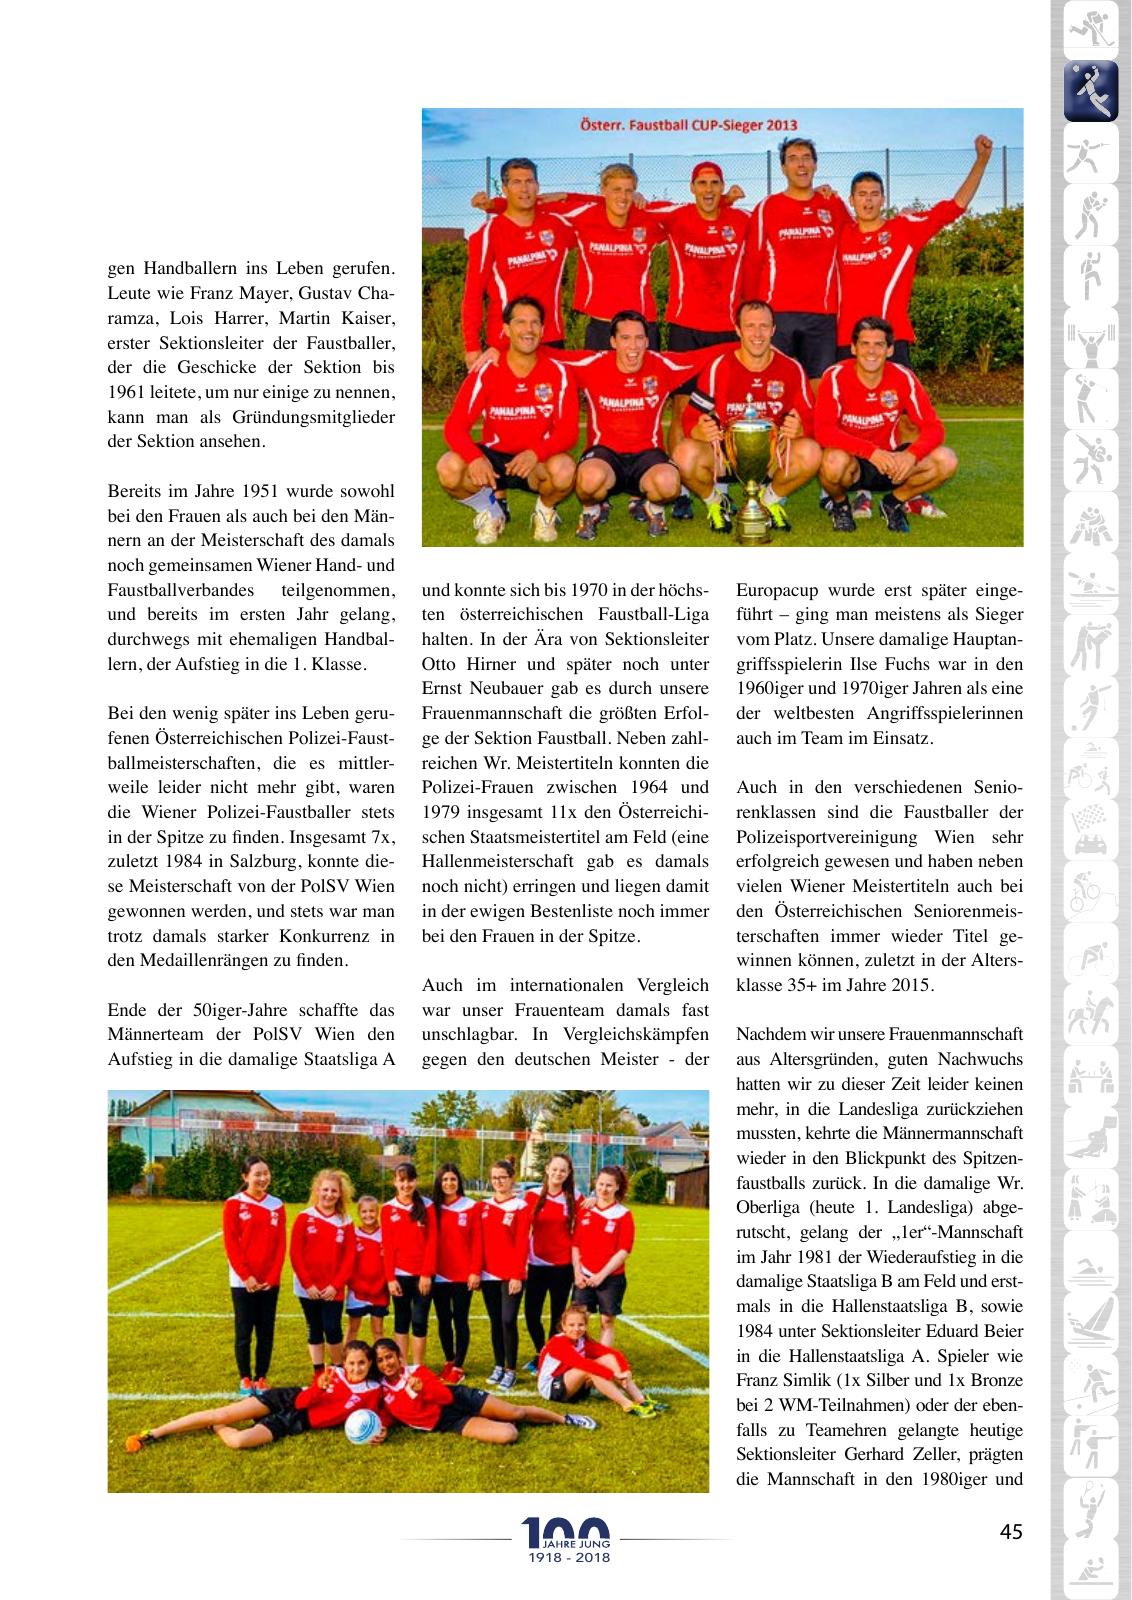 Vorschau Festschrift 100 Jahre PSV-Wien Seite 43